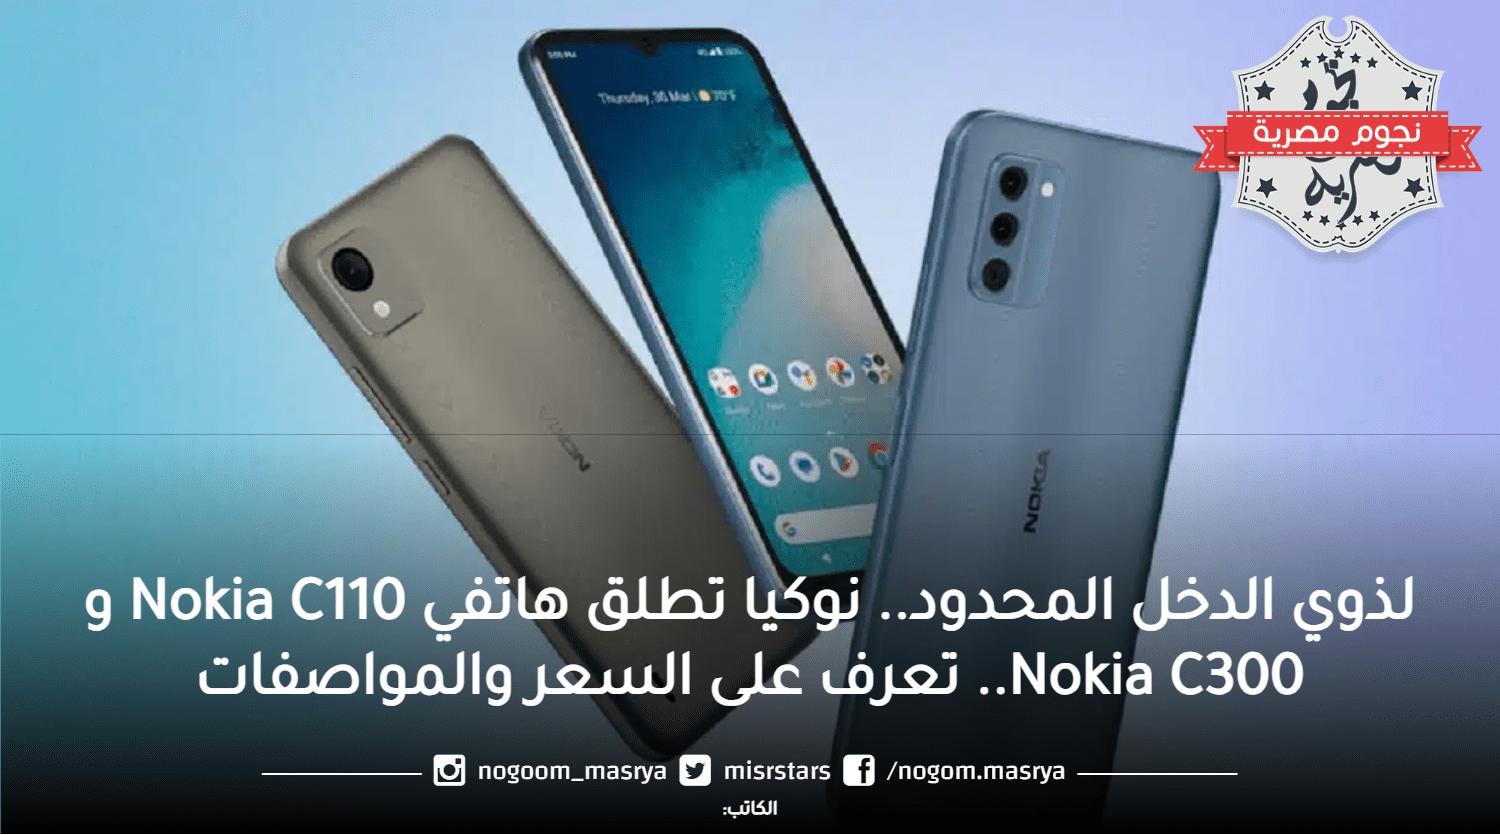 نوكيا تطلق هاتفي Nokia C110 و Nokia C300 لأصحاب الدخل المحدود.. تعرف على السعر والمواصفات